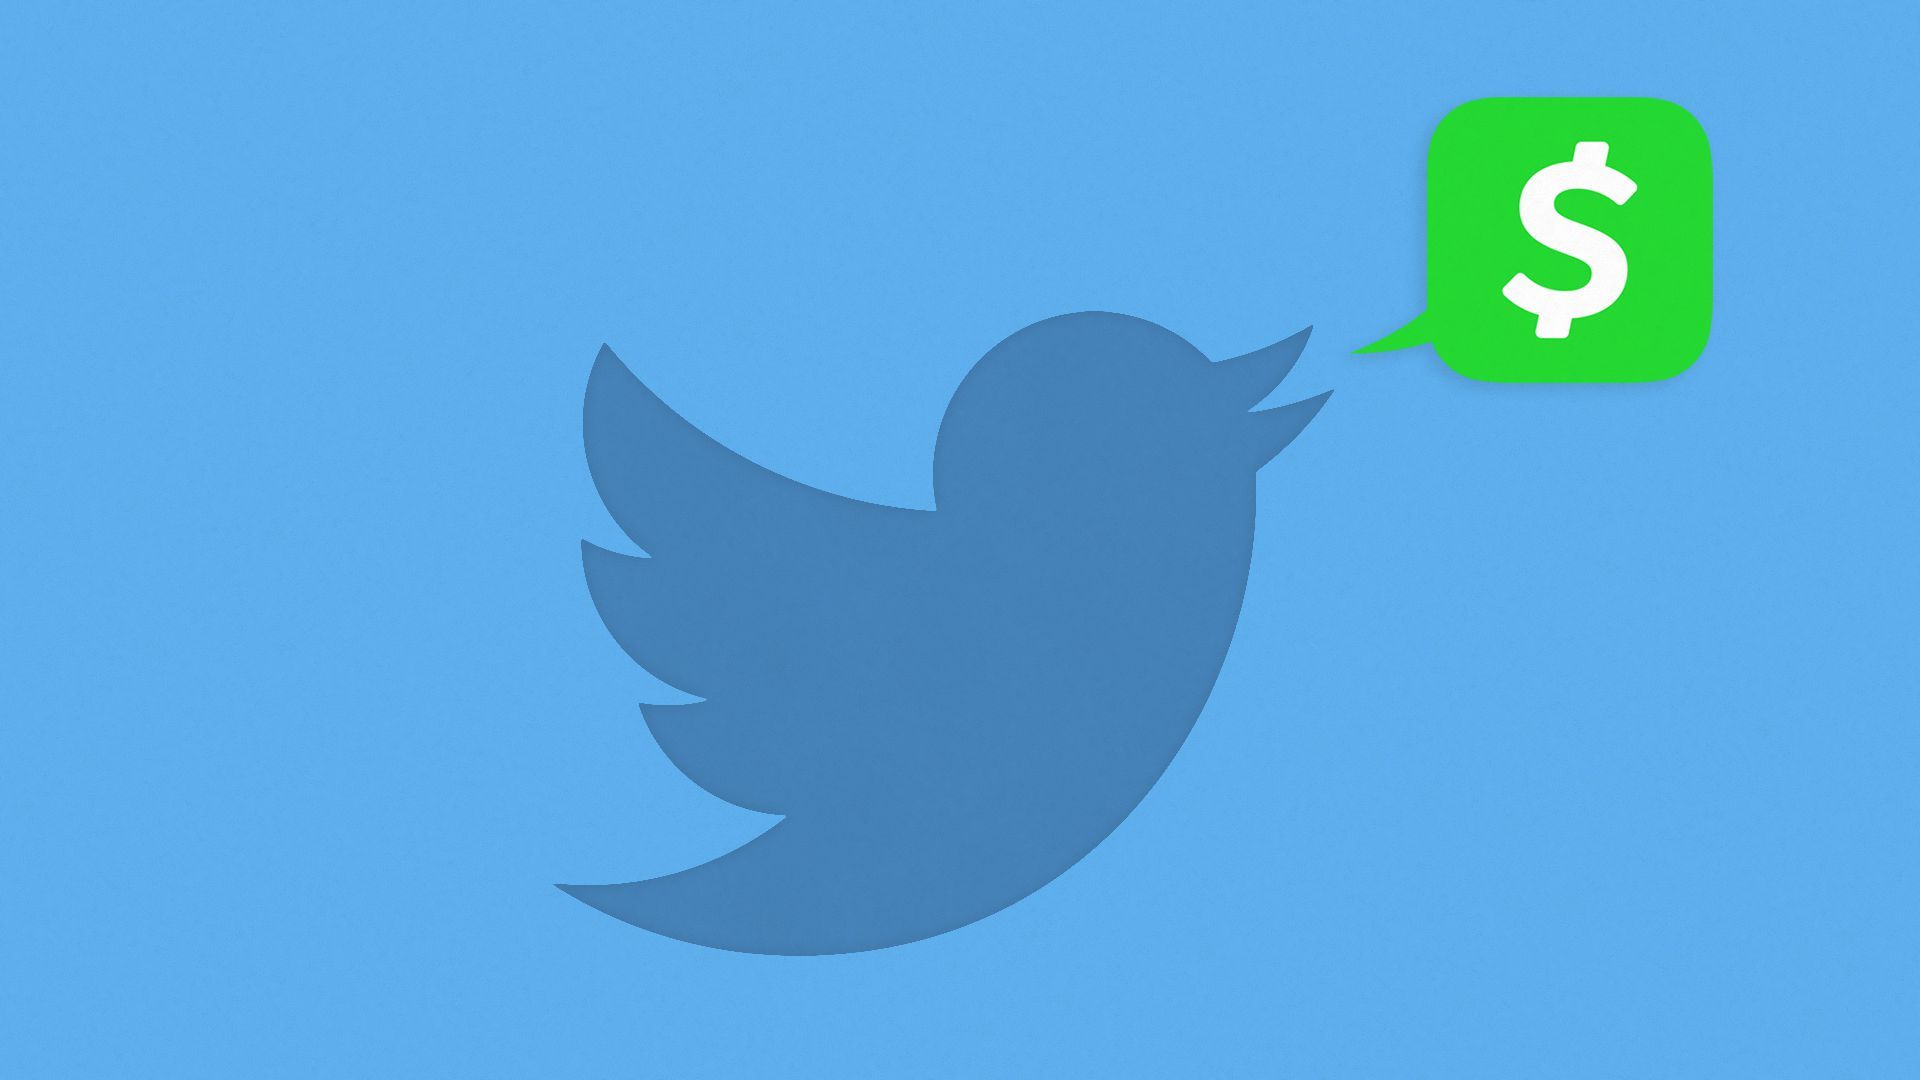 Twitter logo with speech bubble of Cash App logo